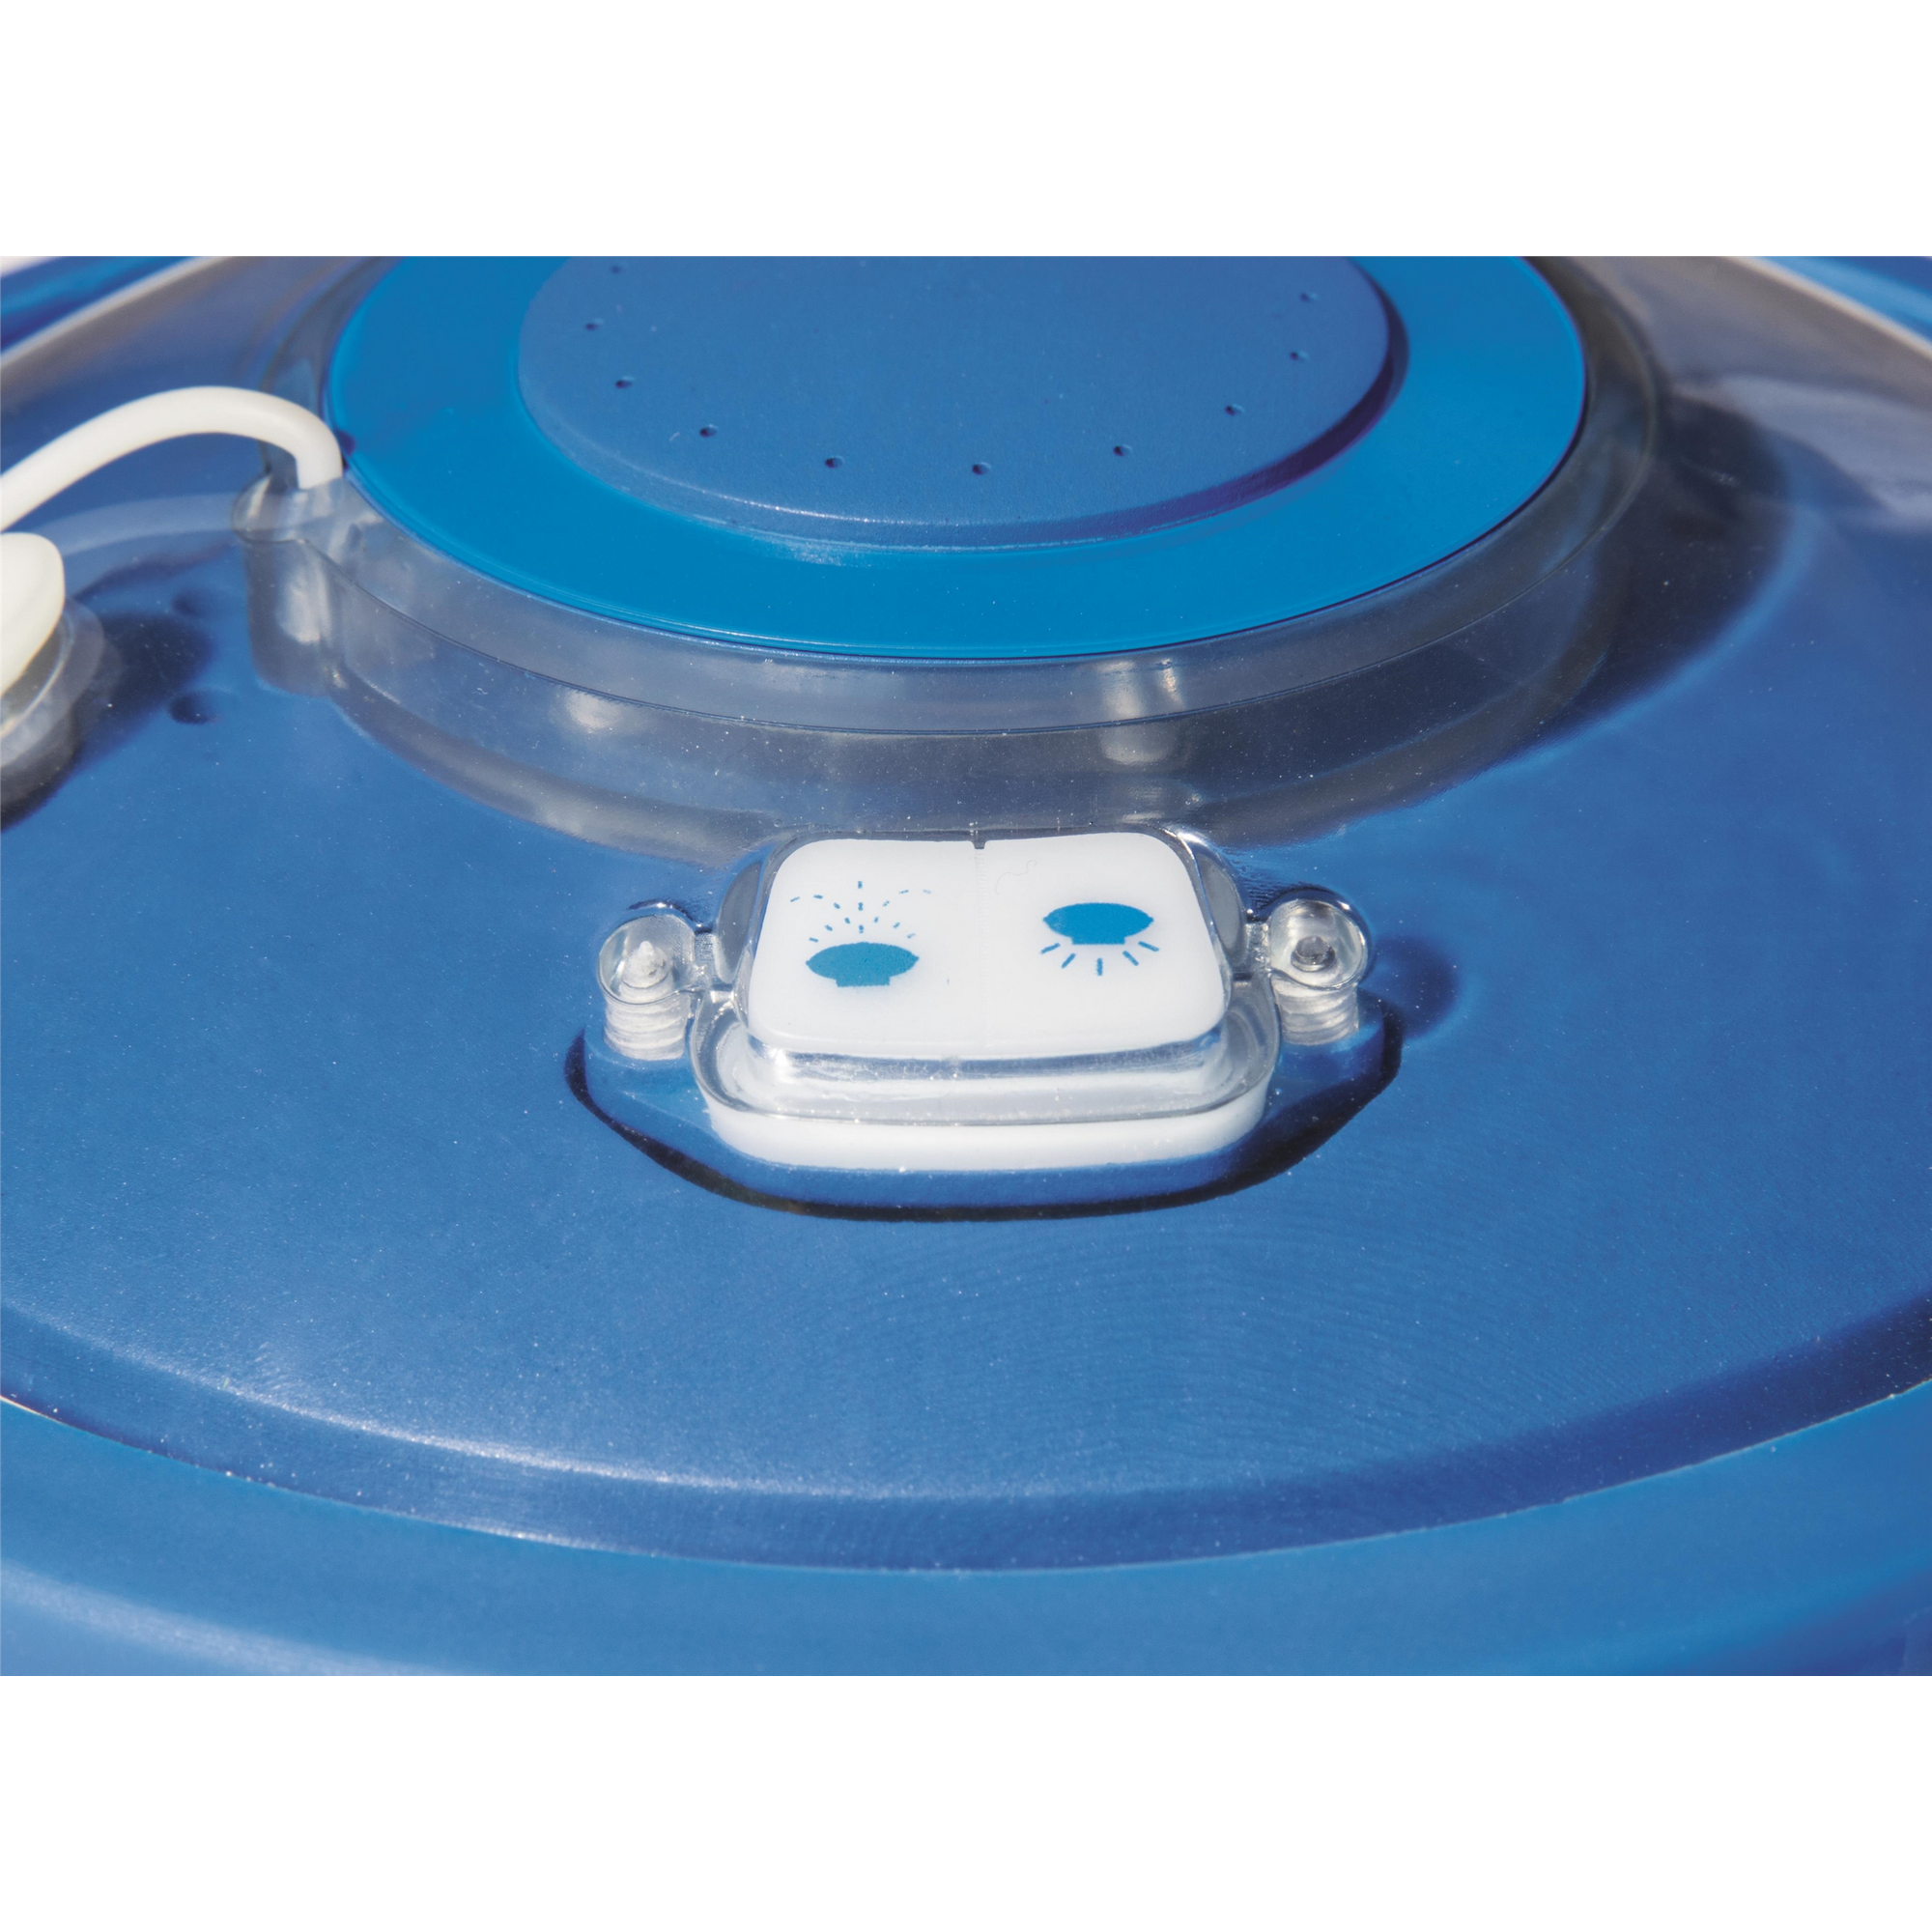 LED-Wasserfontäne 'Flowclear™' blau Ø18,5 cm, inklusive Lithium-Akku + product picture